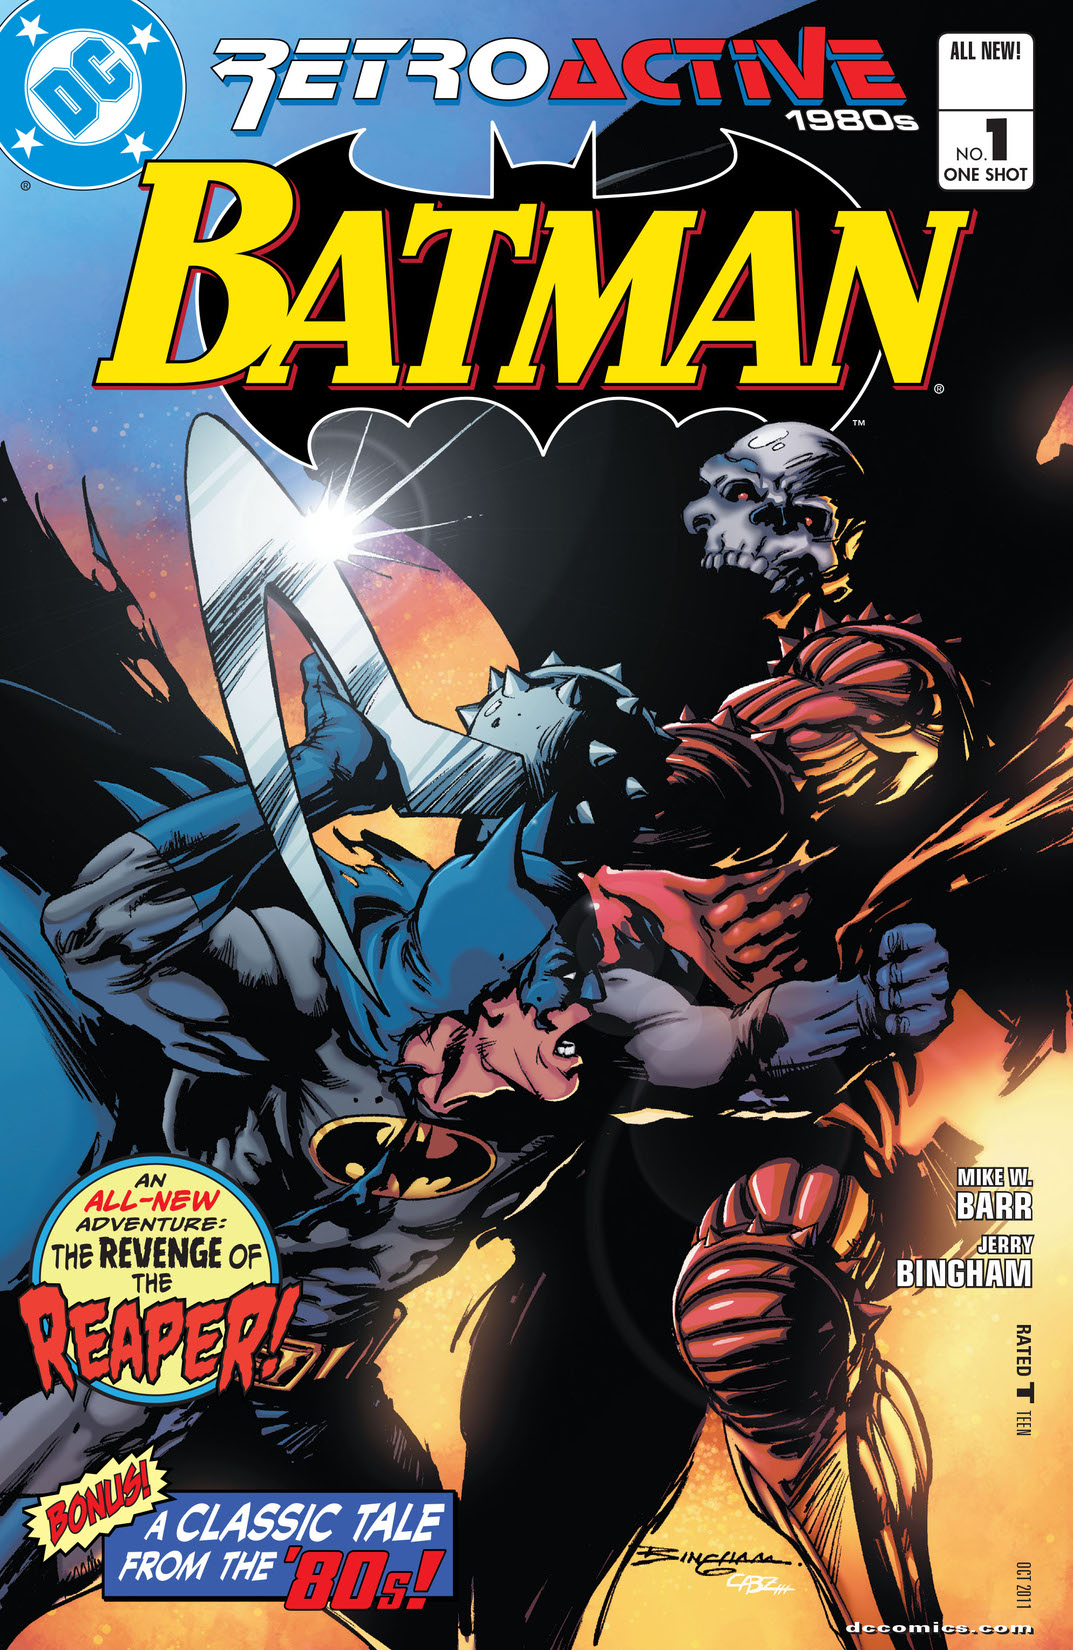 DC Retroactive: Batman - The '80s #1 preview images